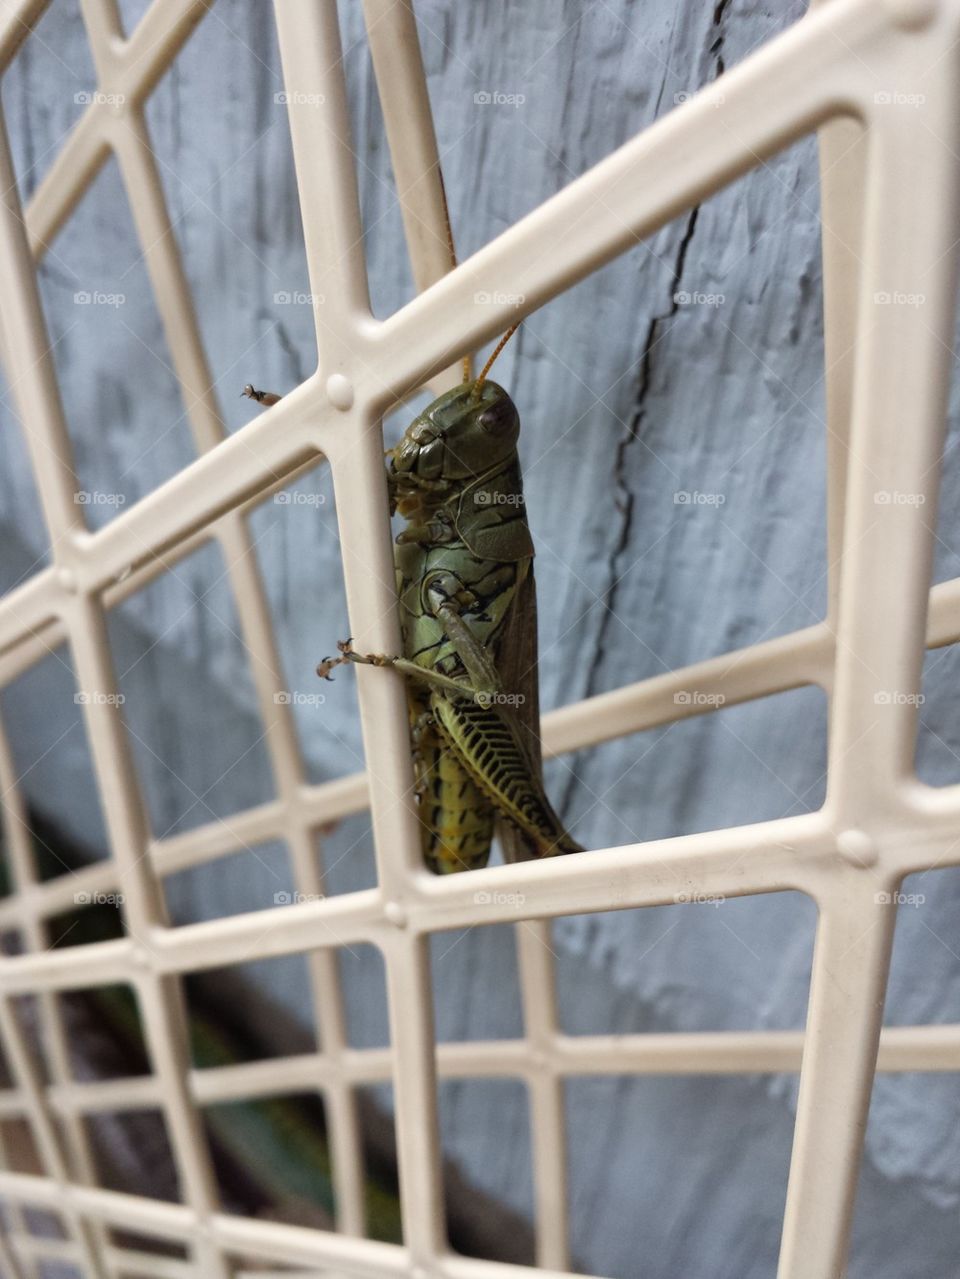 Grasshopper fun!